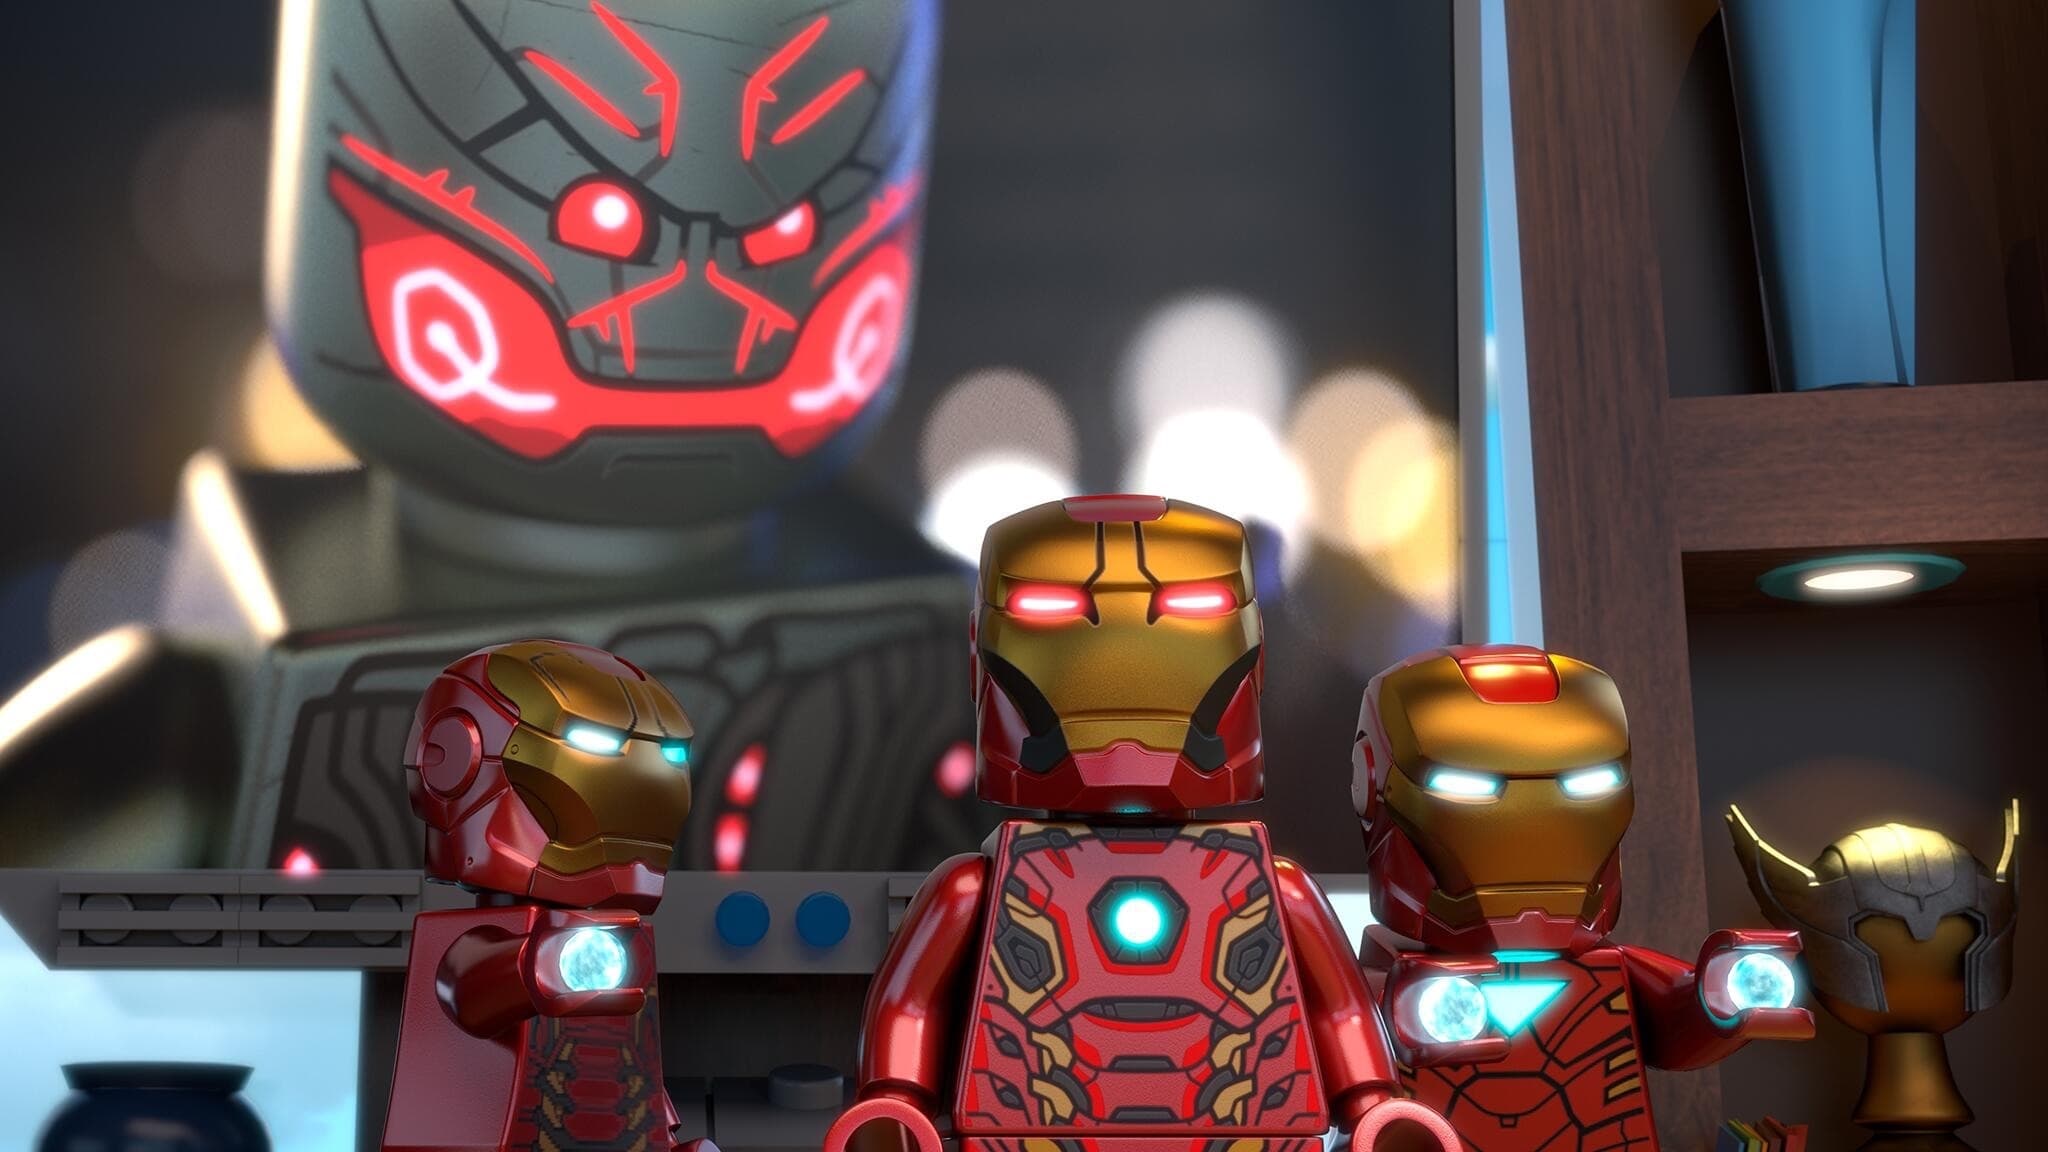 Tapeta filmu Marvel Superhrdinové – Avengers: Sjednocení! / Lego Marvel Super Heroes: Avengers Reassembled (2015)